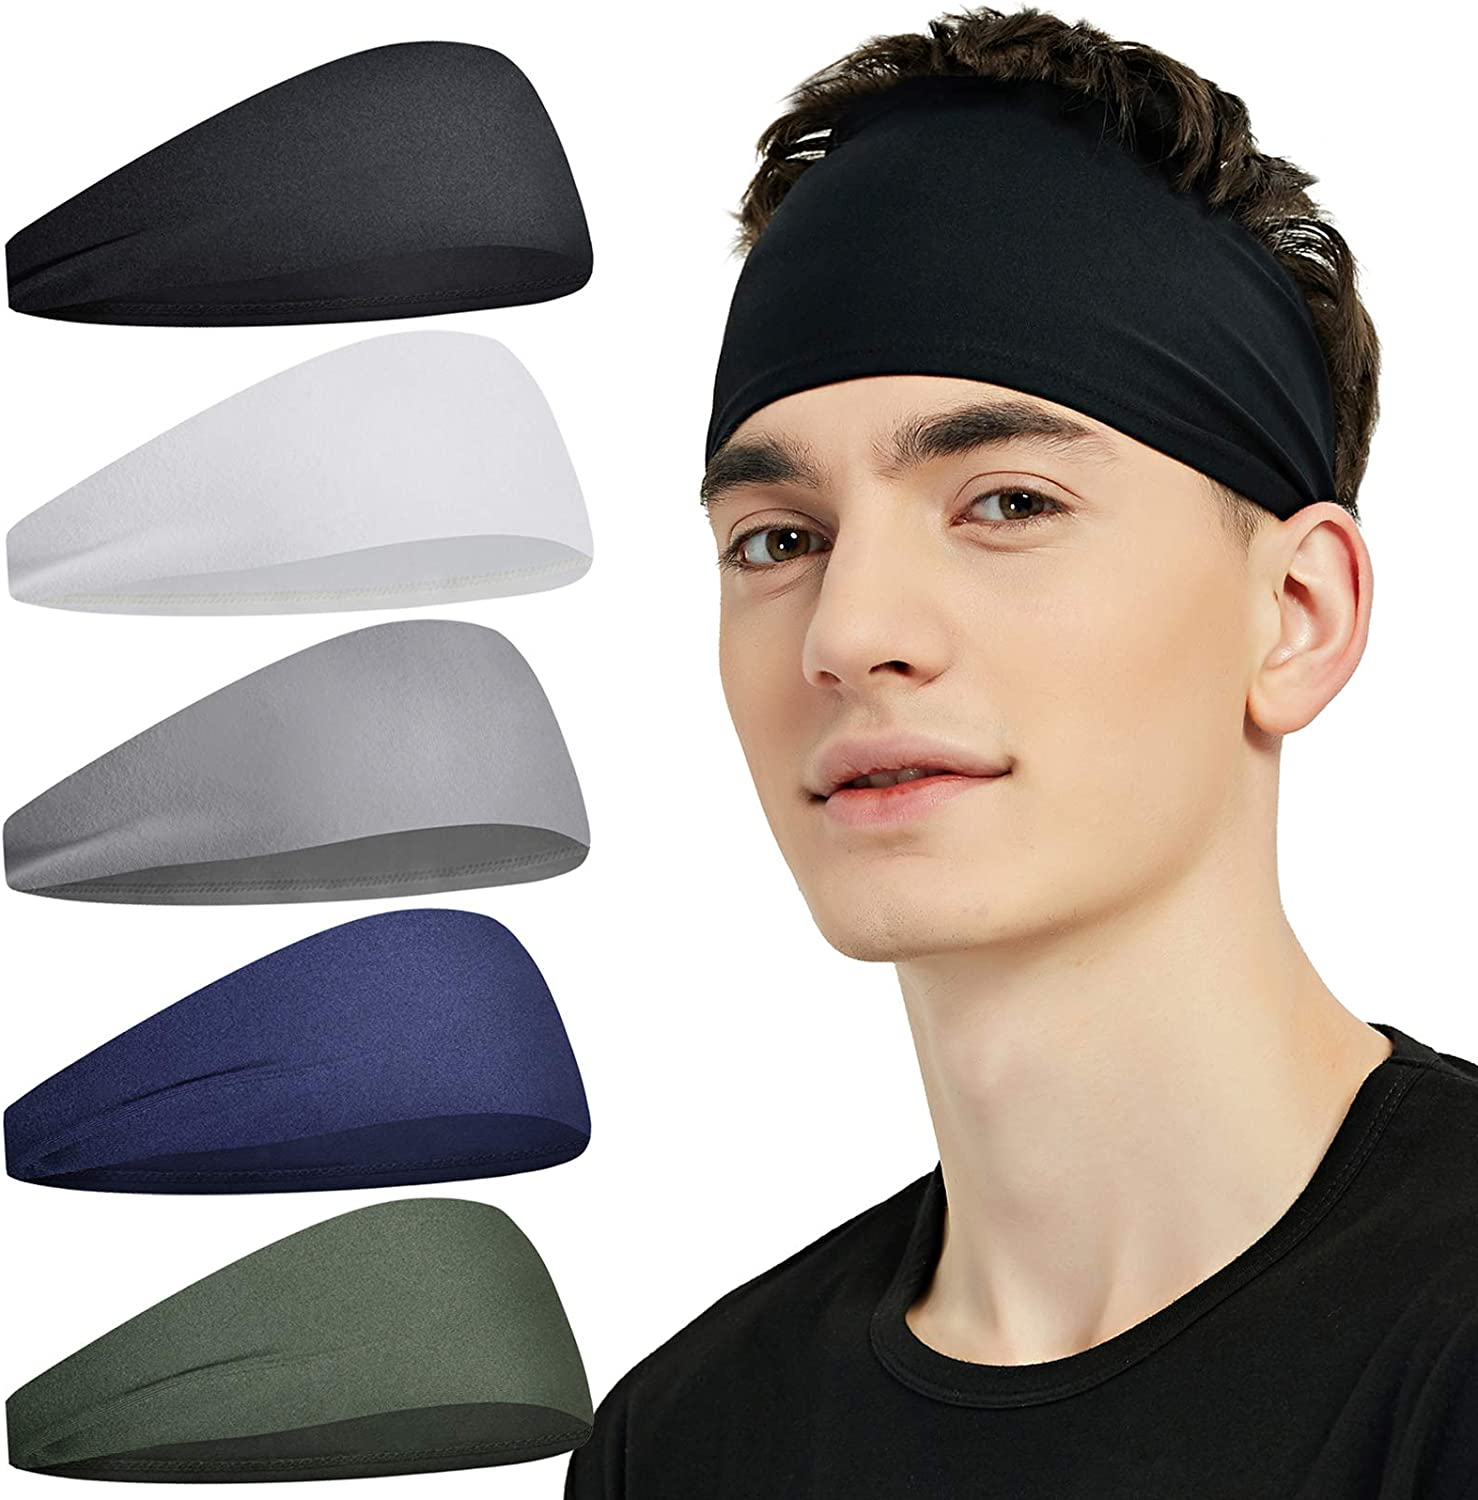 Vitambaa vya Kichwa vya Michezo kwa Wanaume Sweatband Headband Unyevu Wicking Workout Hairband